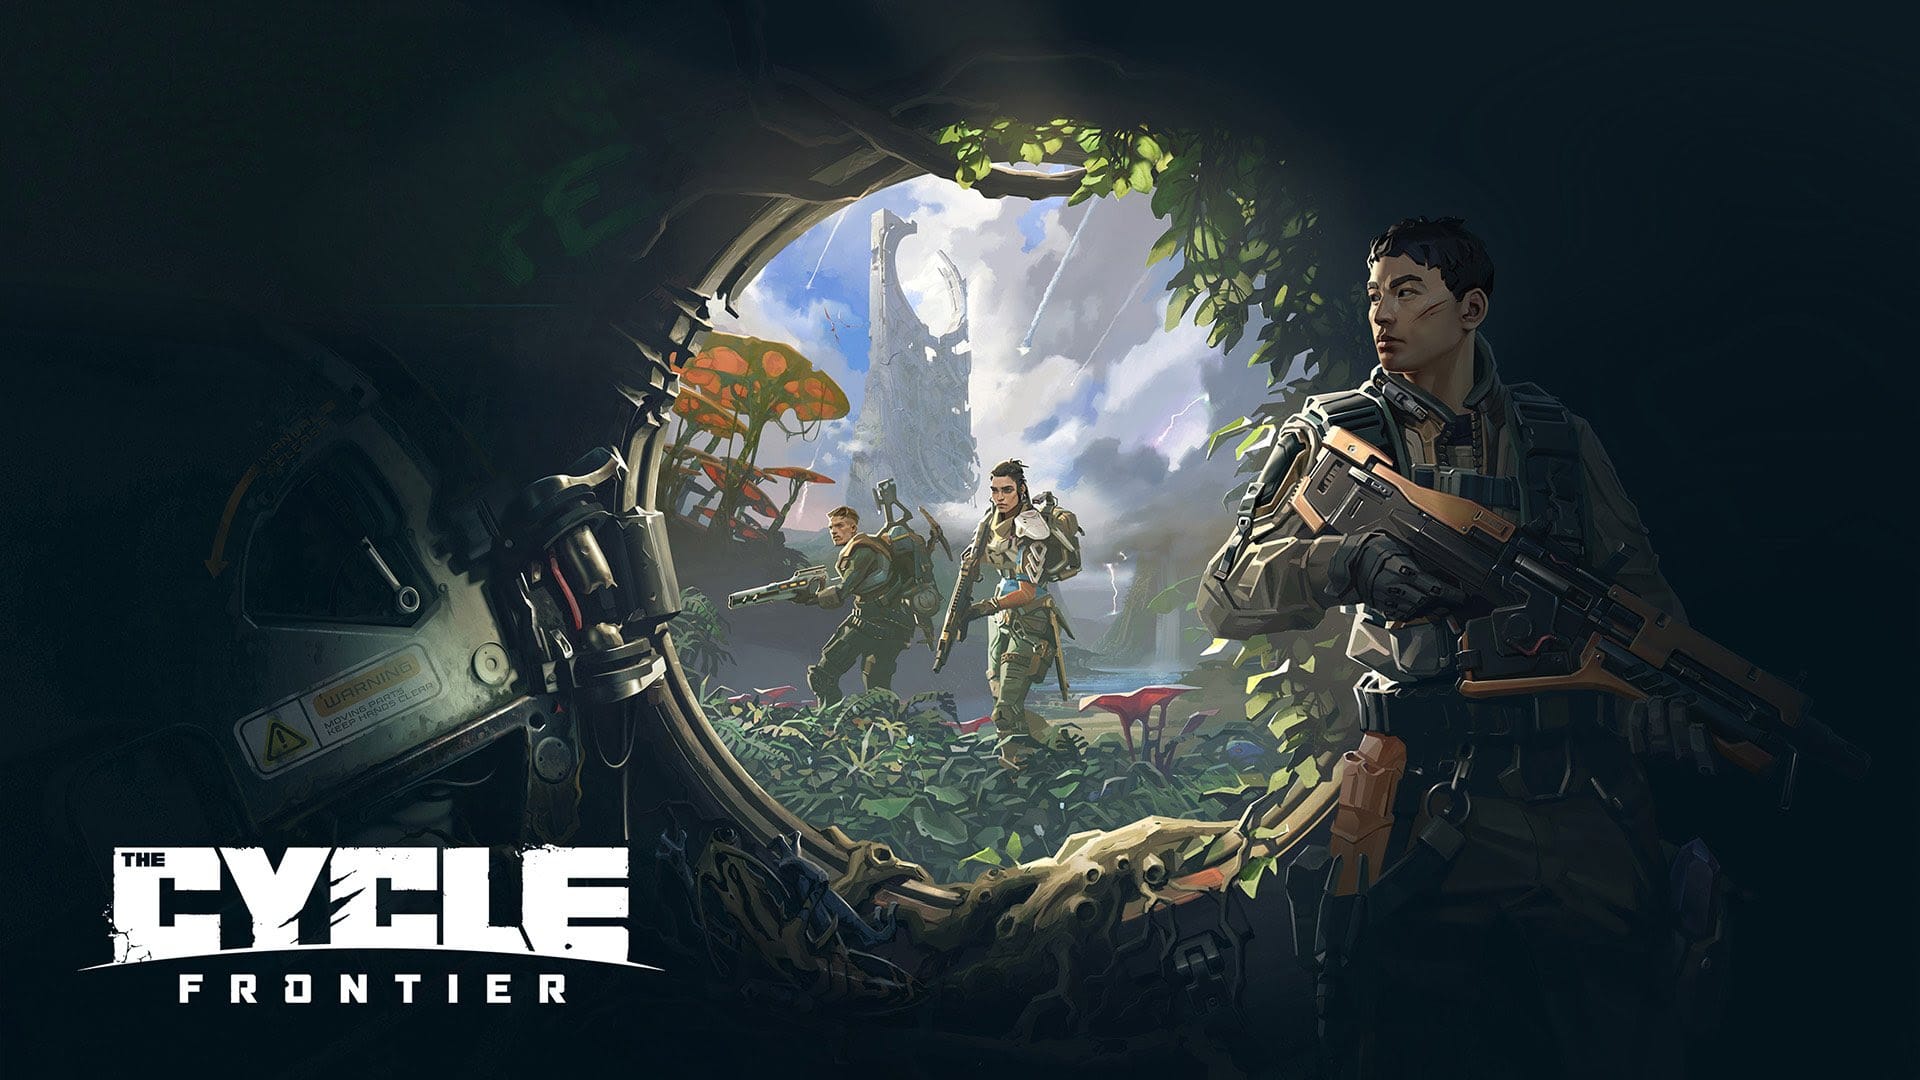 La nuova closed beta di The Cycle: Frontier disponibile su Steam e Epic Game Store thumbnail